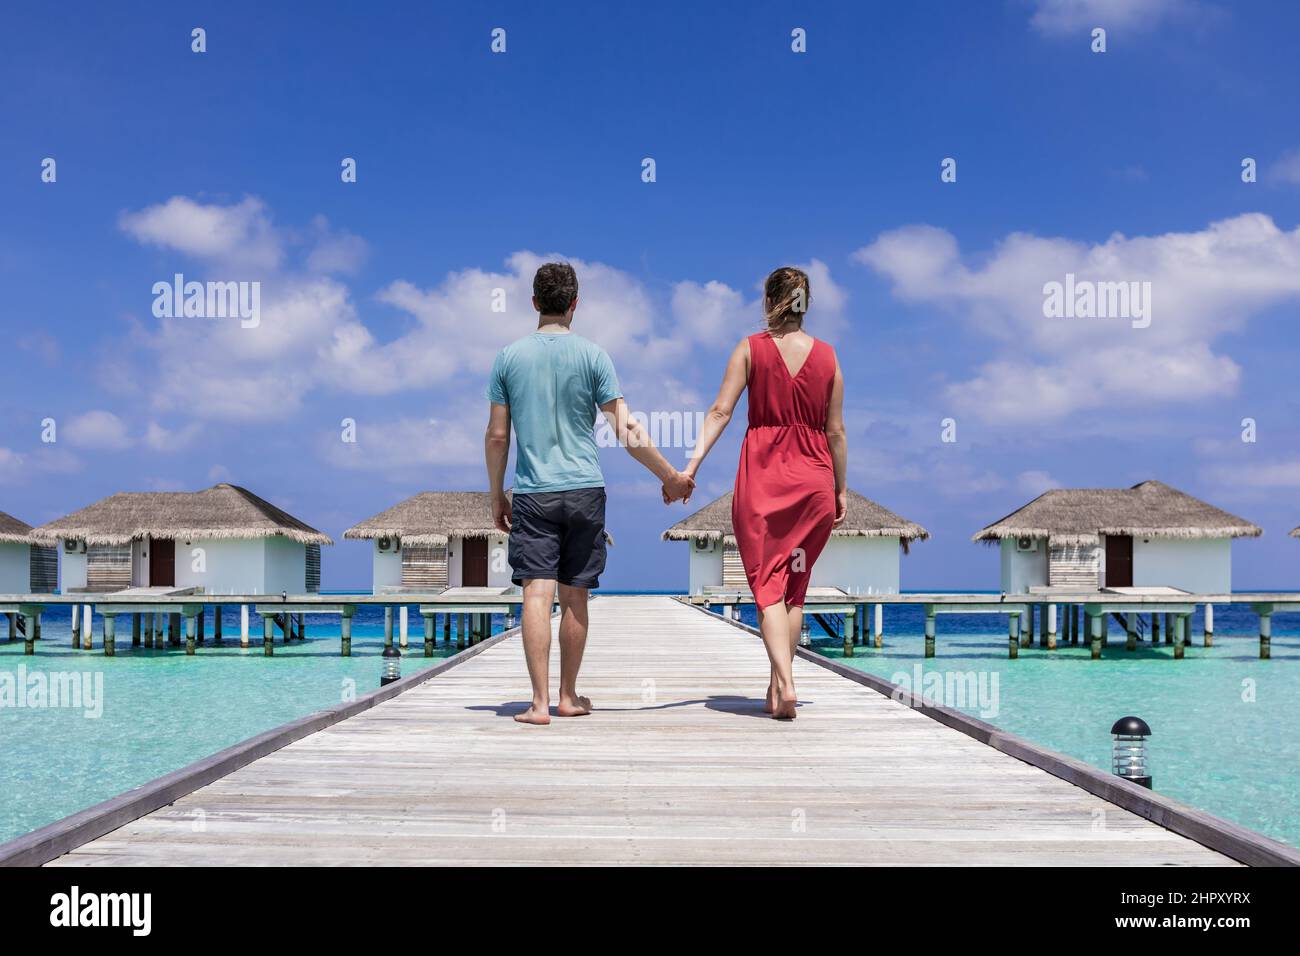 Paar verbringen einen romantischen Strandurlaub in einem luxuriösen Resort auf den Malediven mit Überwasser-Villen, türkisfarbenem Meerwasser und blauem Himmel. Paradies ato Stockfoto